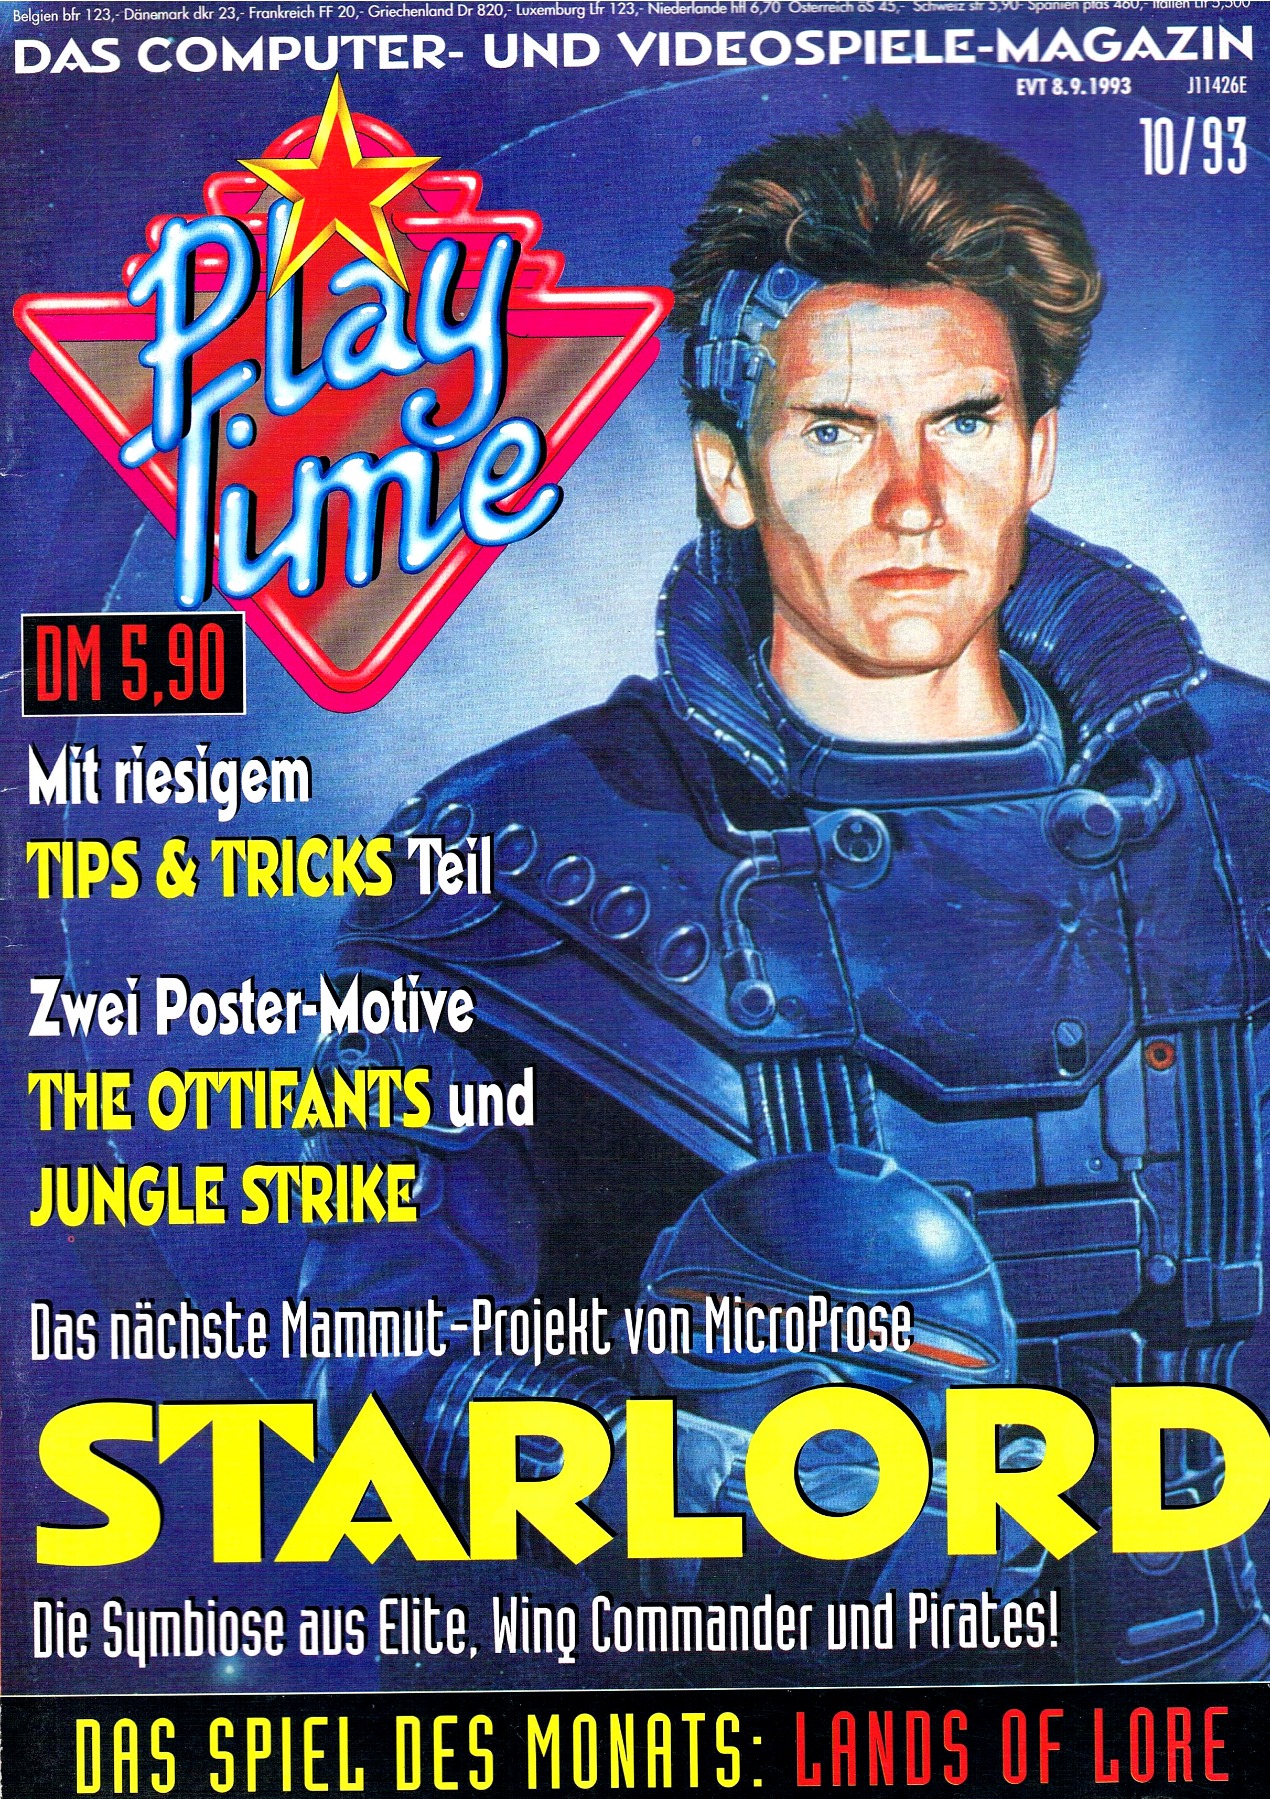 Play Time - Das Computer- und Videospiele-Magazin - Ausgabe 10/93 1993